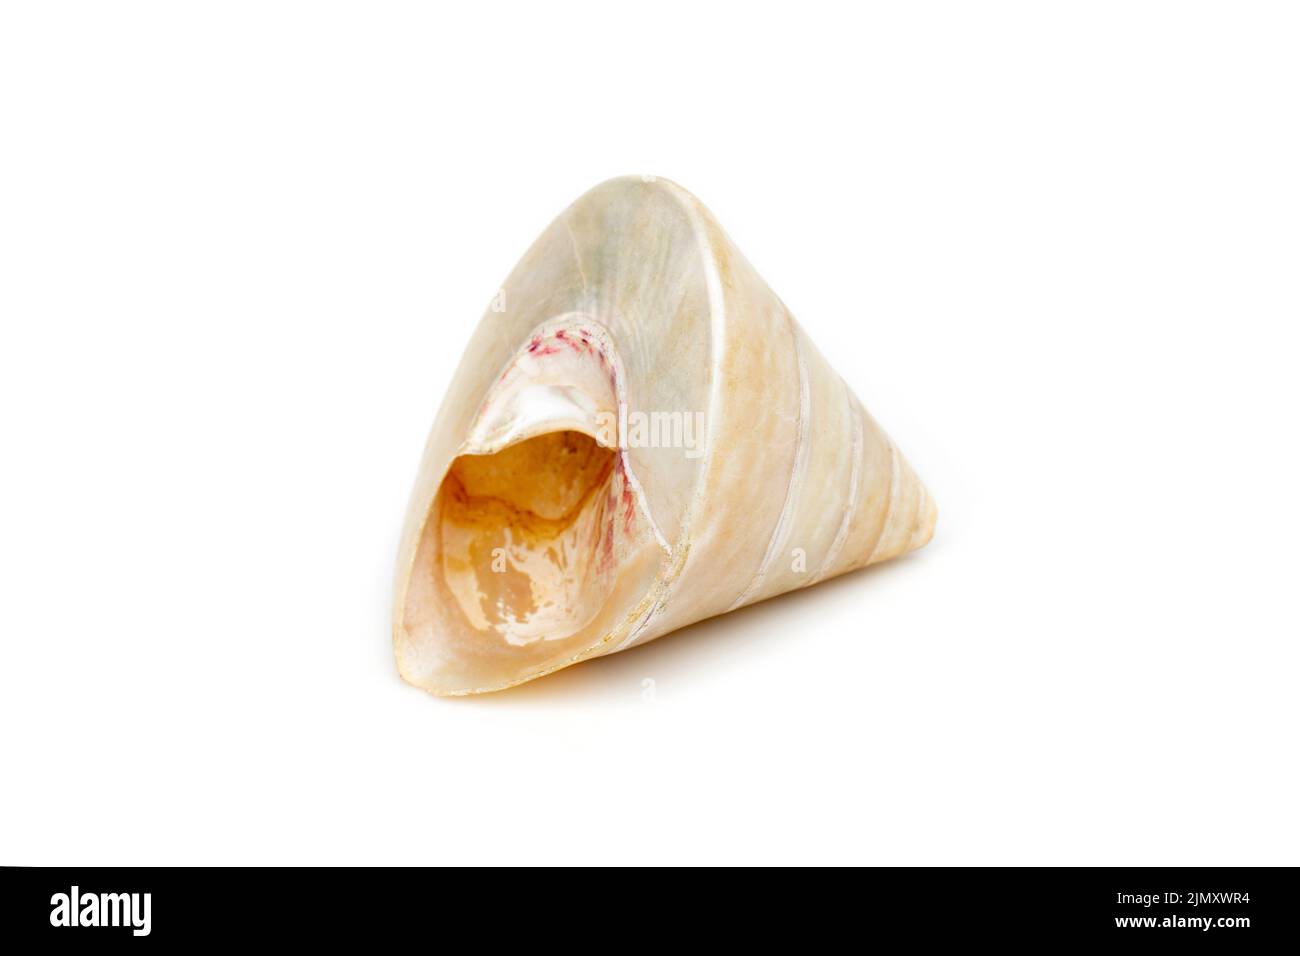 Immagine di conchiglie di trocus perle su sfondo bianco. Animali sottomarini. Conchiglie marine. Foto Stock